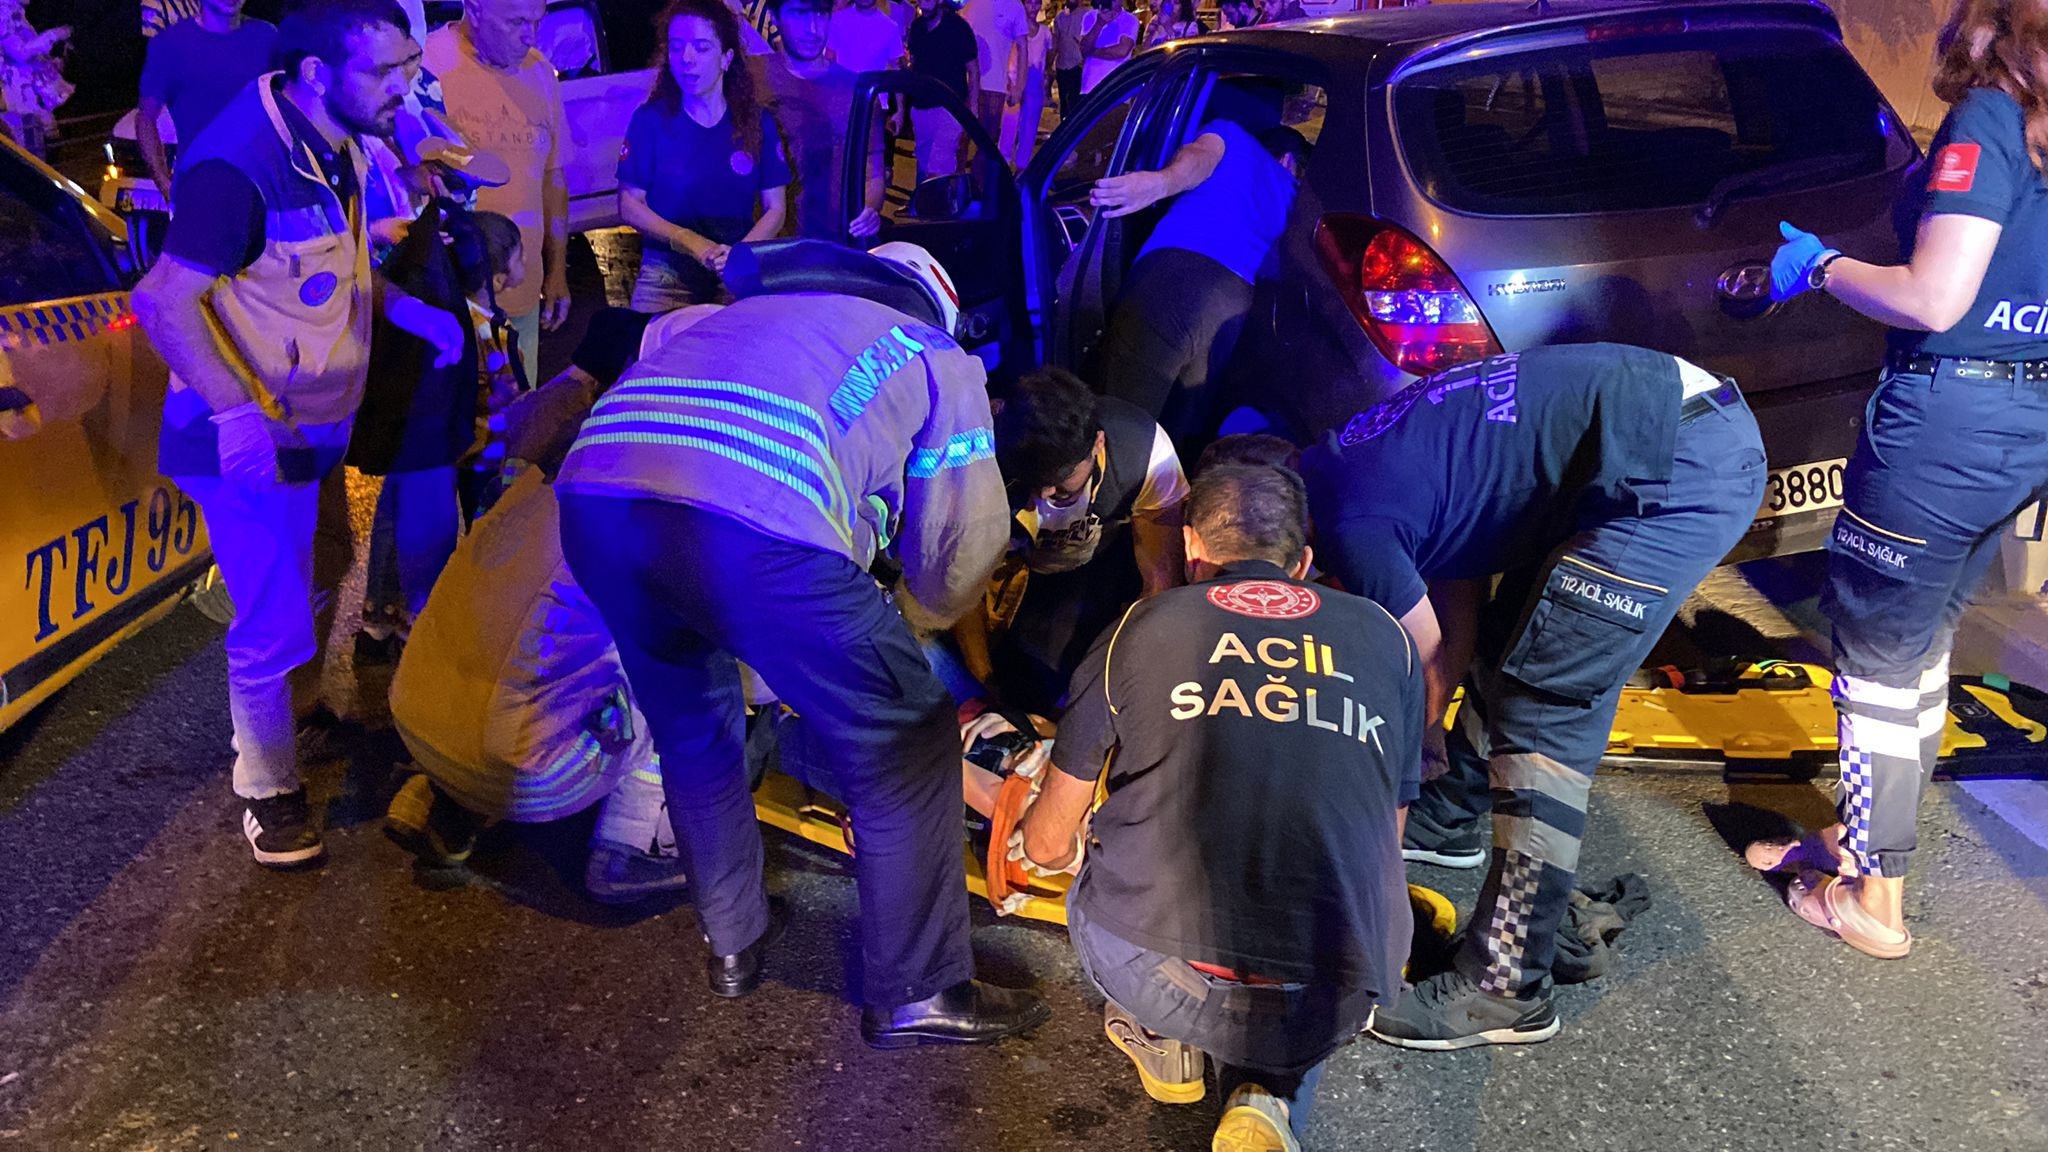 Beşiktaş Ulus’ta ters yöne giren otomobil, ticari taksiyle kafa kafaya çarpıştı. 3 aracın karıştığı kazada ortalık savaş alanına dönerken 7 kişi yaralandı.